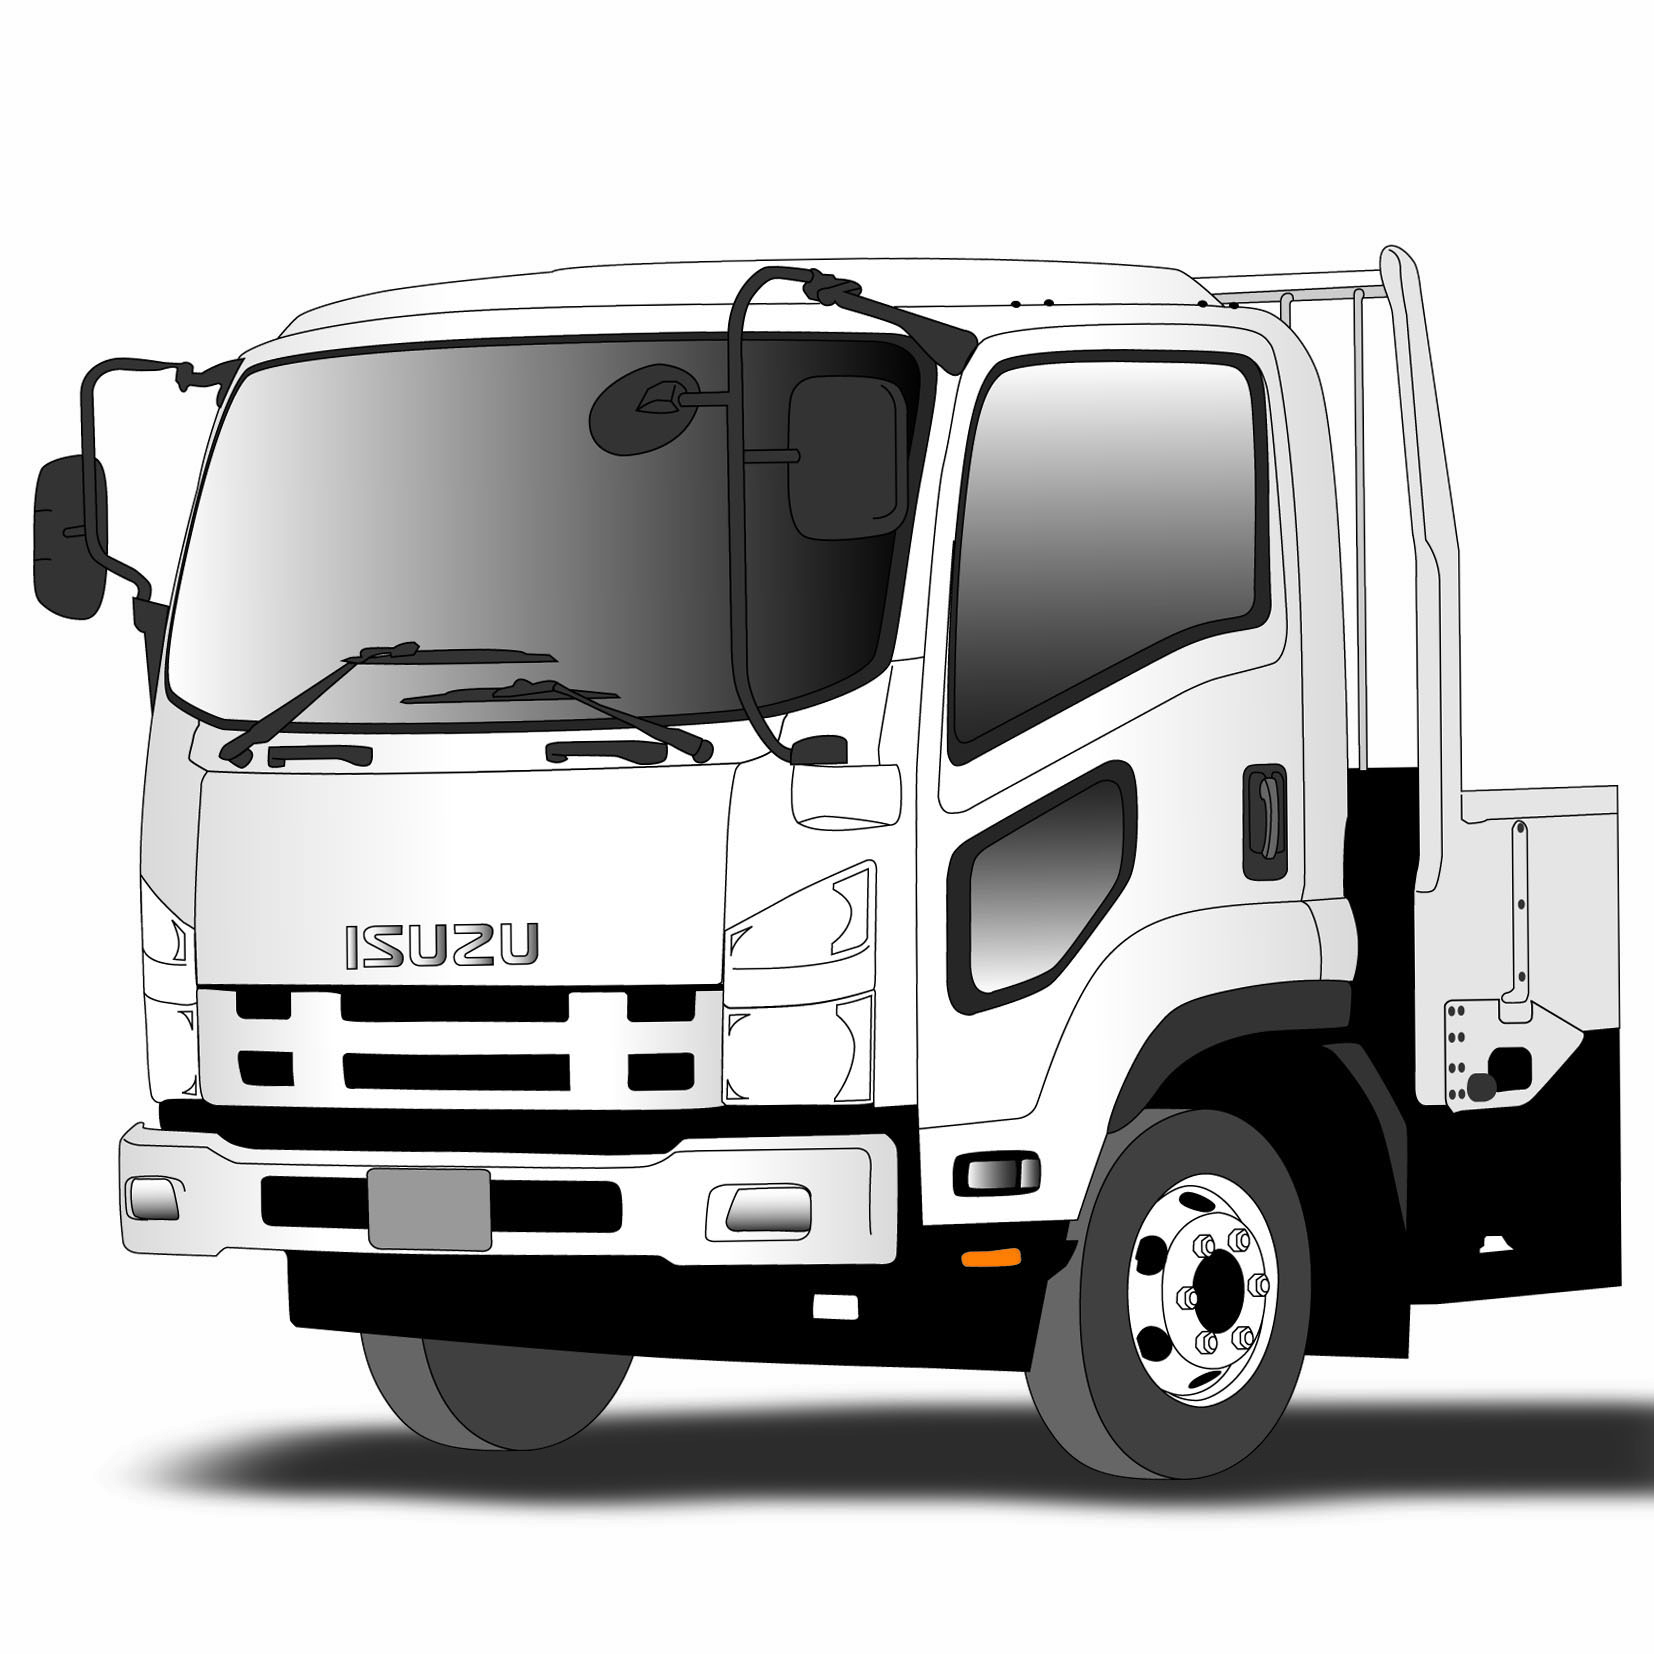 07フォワード/ファイブスターギガ用 安全窓ガーニッシュ 鏡面/ウロコ 大阪のトラックショップKENZはトラックパーツ、トラック用品